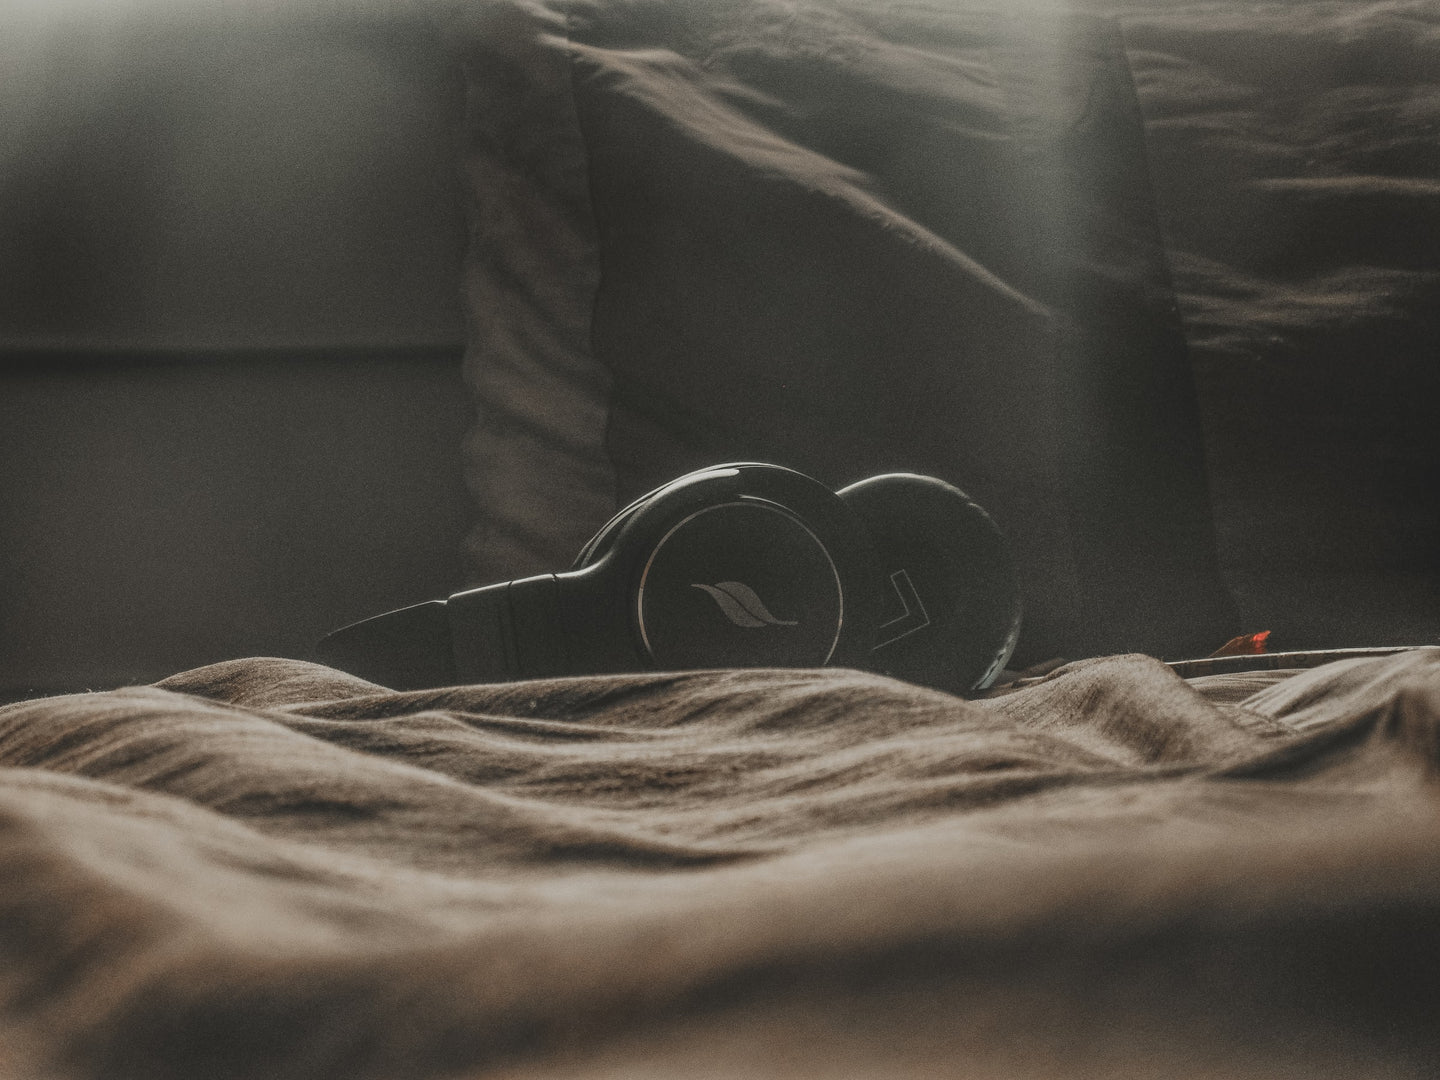 Sleeping Audio: Sounds to Help You Sleep